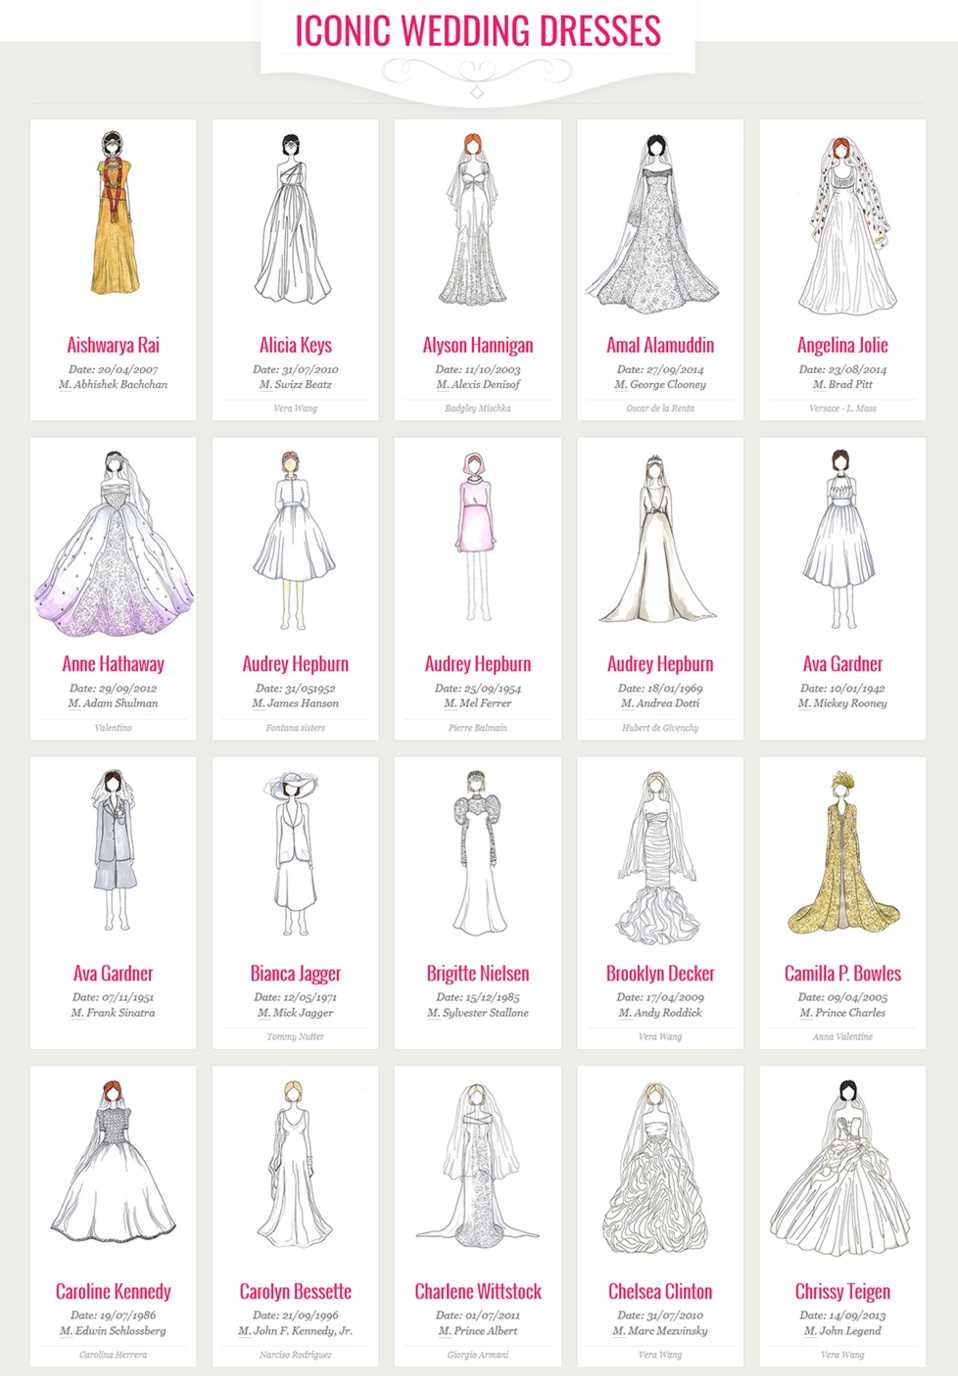 Как выбрать свадебное платье, как подобрать по фигуре, какие бывают свадебные платья, цвет, каким должно быть, какое свадебное платье выбрать, какое подойдет, какое в моде